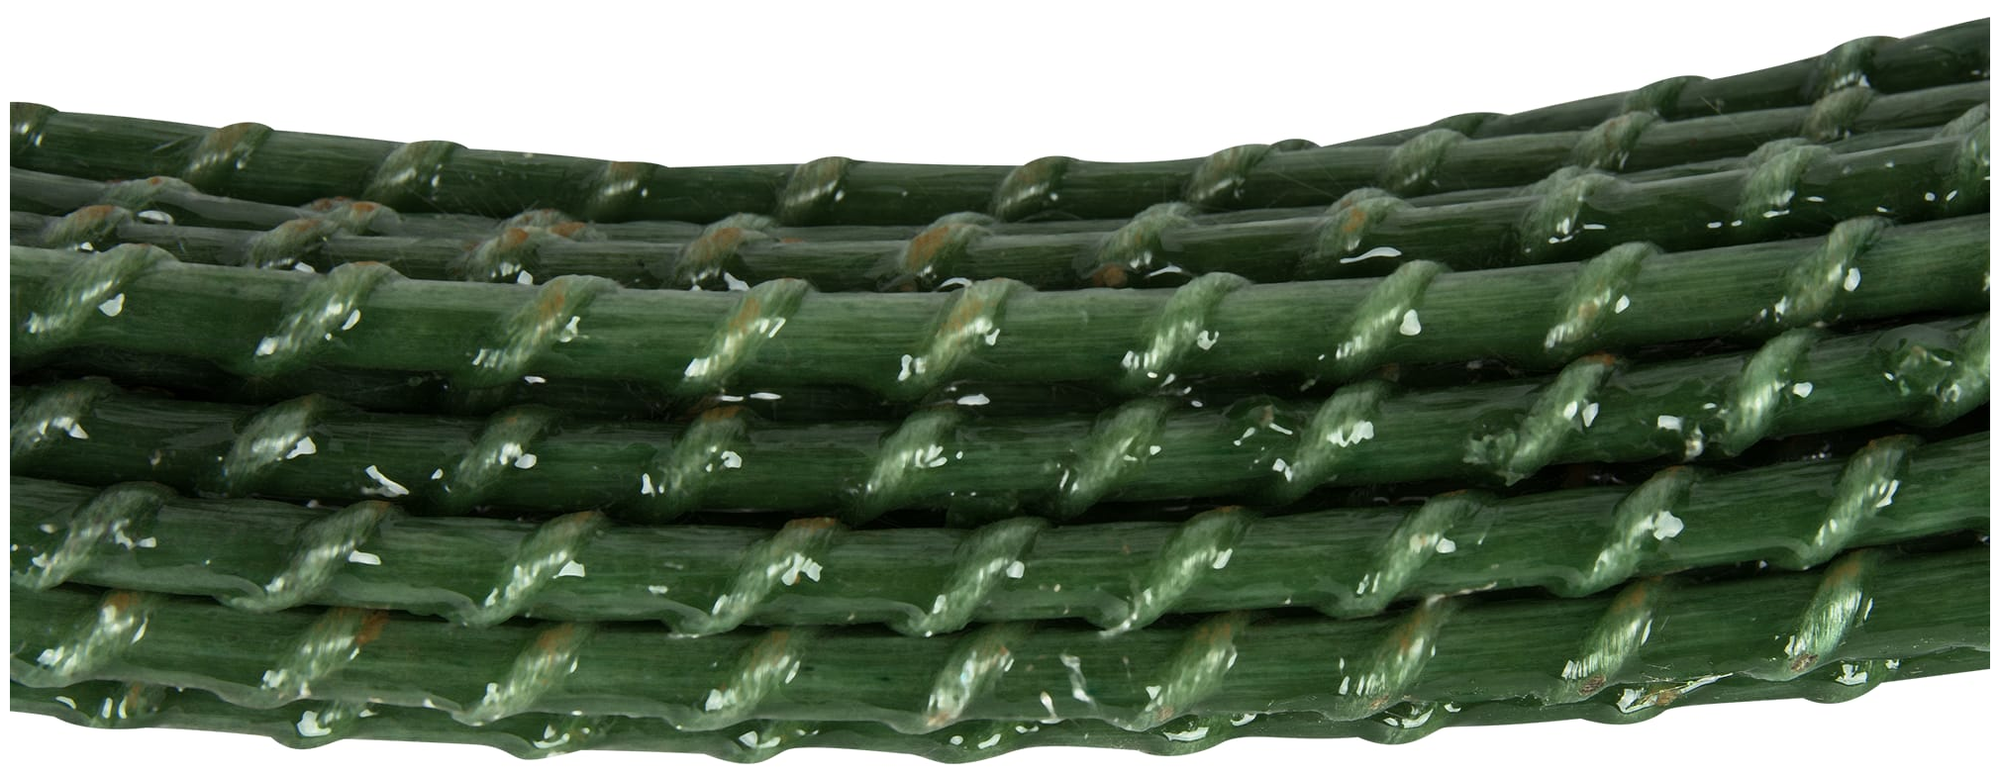 Колышки садовые CompositArm, длина 200 см, диаметр 8 мм, зеленые, 10 шт в упаковке - фотография № 6